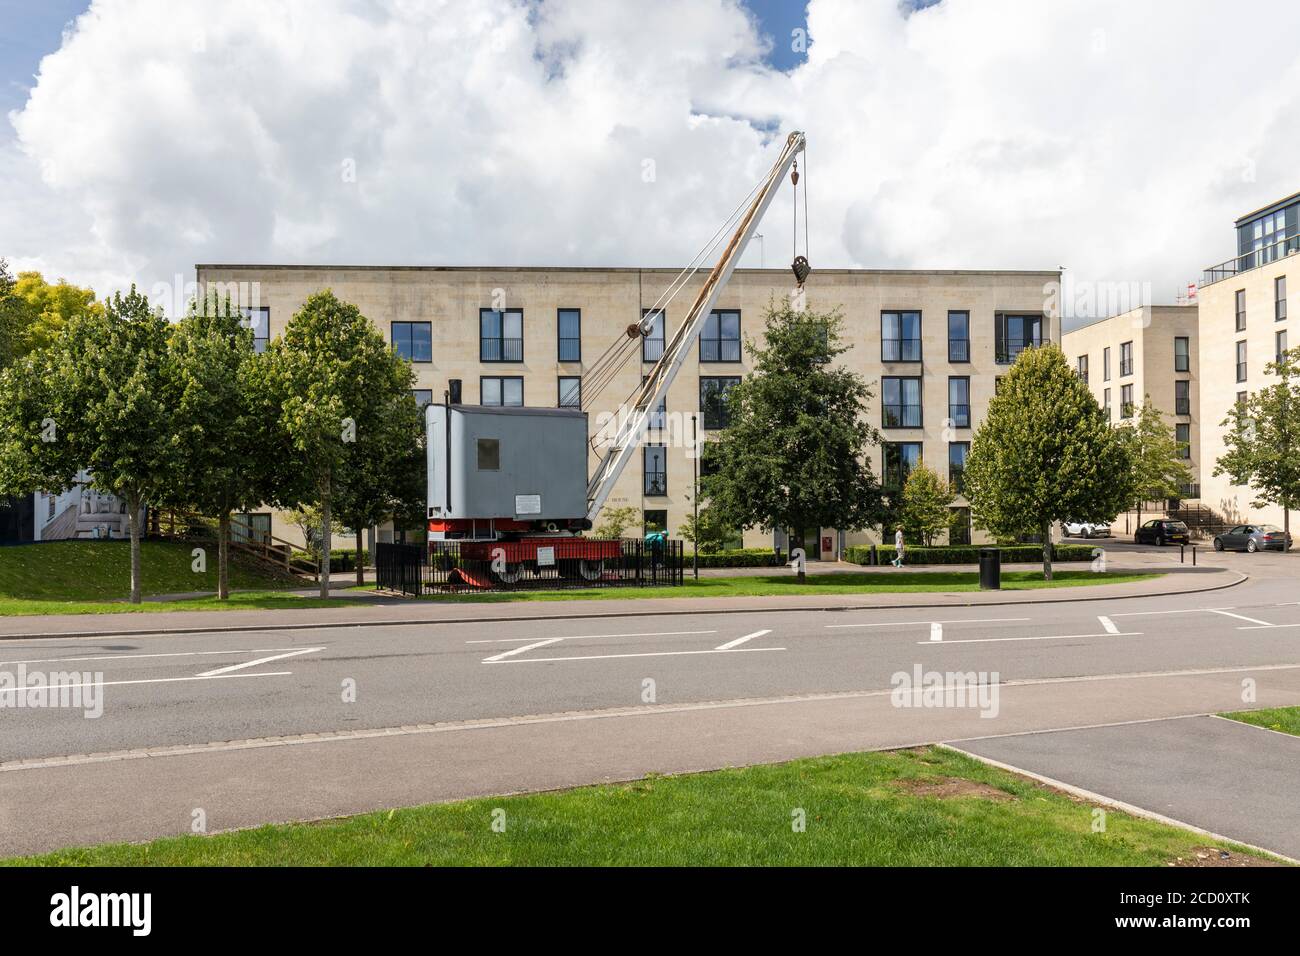 Stothert & Pitt Dampfkran restauriert als Teil der Art Strategy in Bath Riverside Development. Neue Luxus-Apartments in der Nähe von Bath City Centre.England, Großbritannien Stockfoto